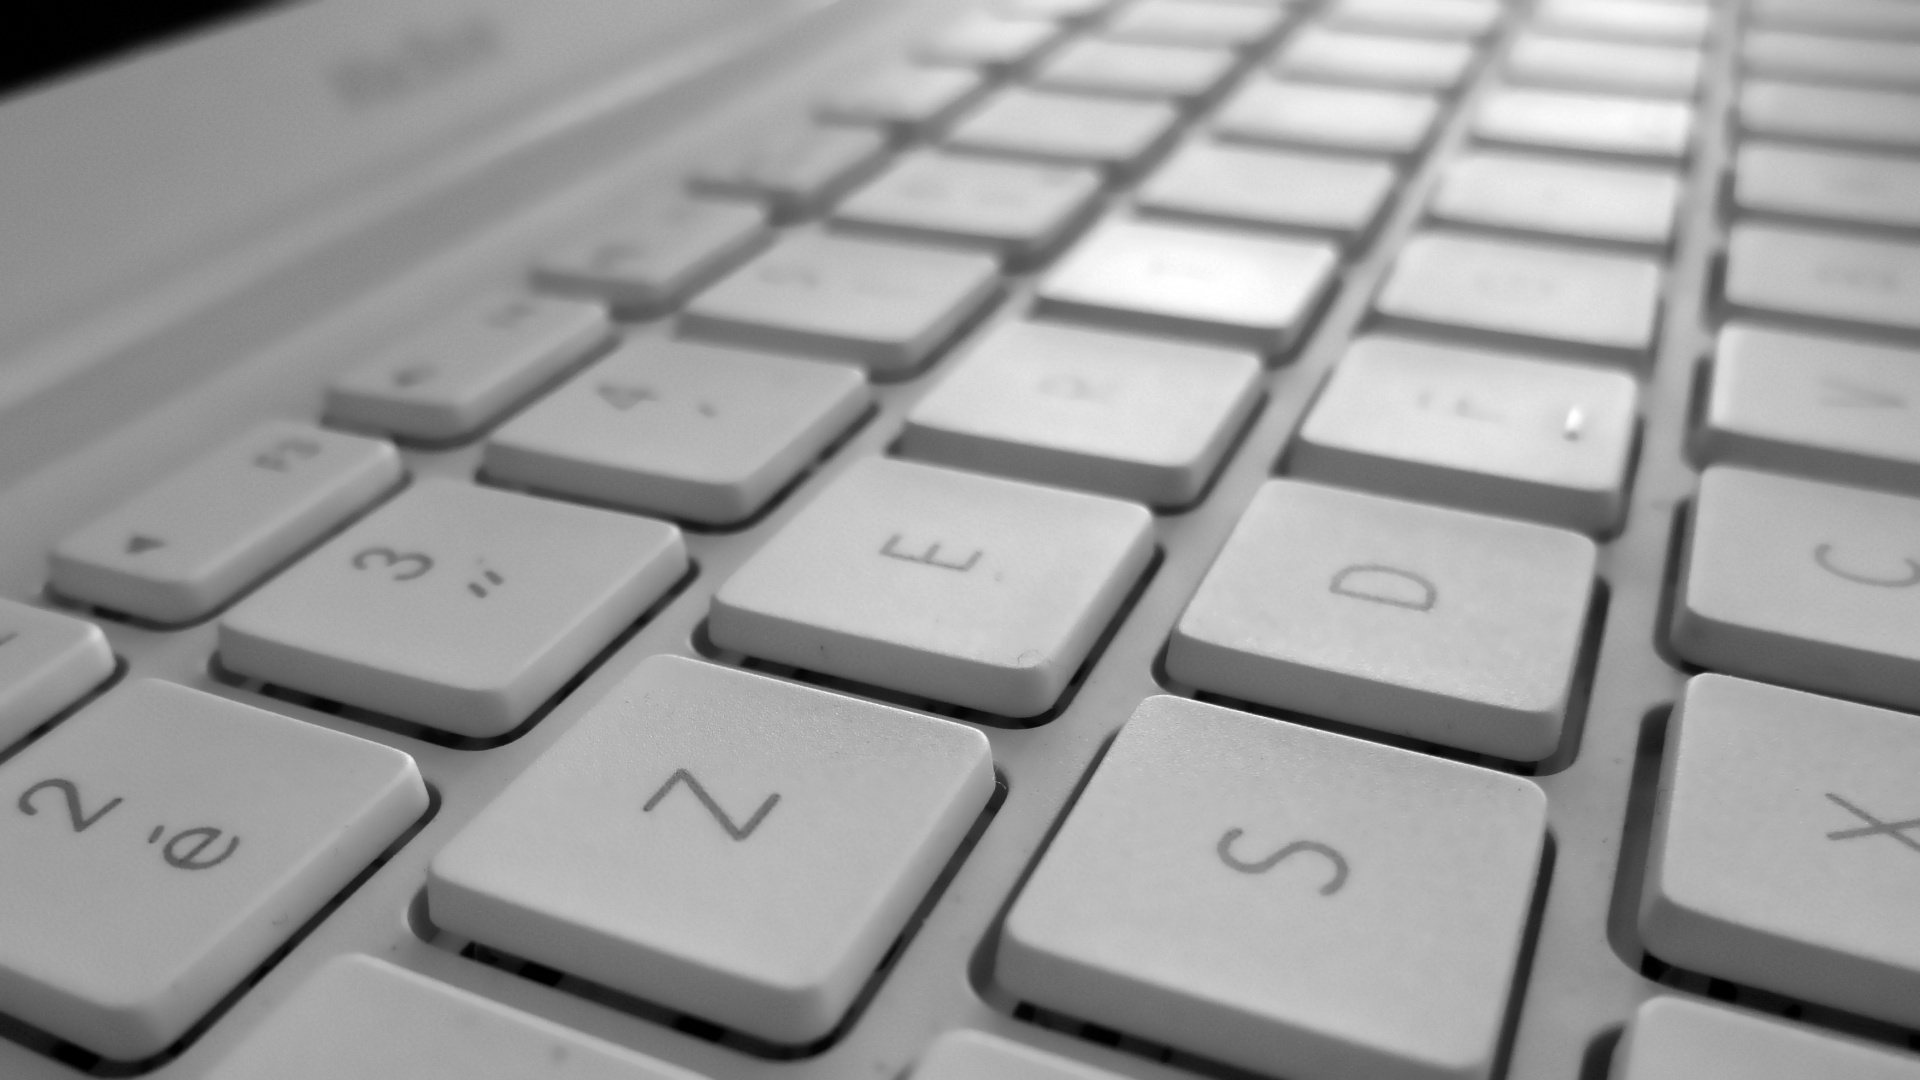 tastatur hintergrund hd,computer tastatur,technologie,eingabegerät,text,computerkomponente